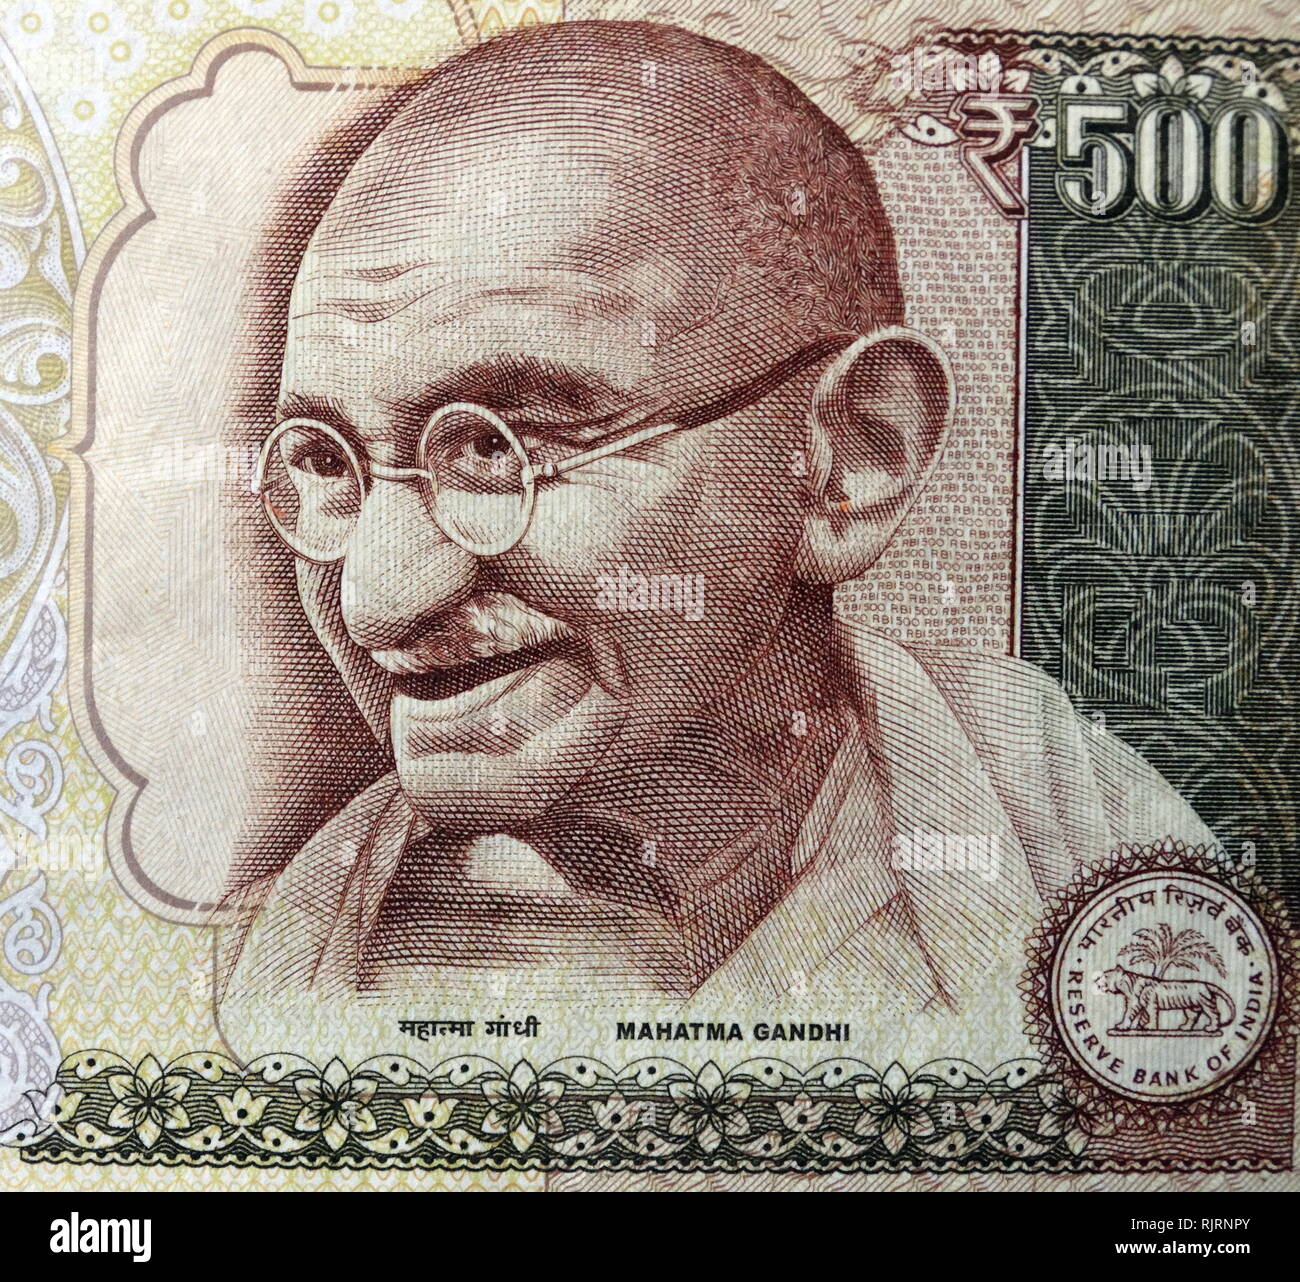 Gandhi raffigurato su 500 rupie banconota, utilizzato in India, tra ottobre 1997 e novembre 2016. Mohandas Karamchand Gandhi (1869 - 1948), era un attivista indiana che era il leader dell'Indiano movimento di indipendenza contro il dominio britannico. Foto Stock